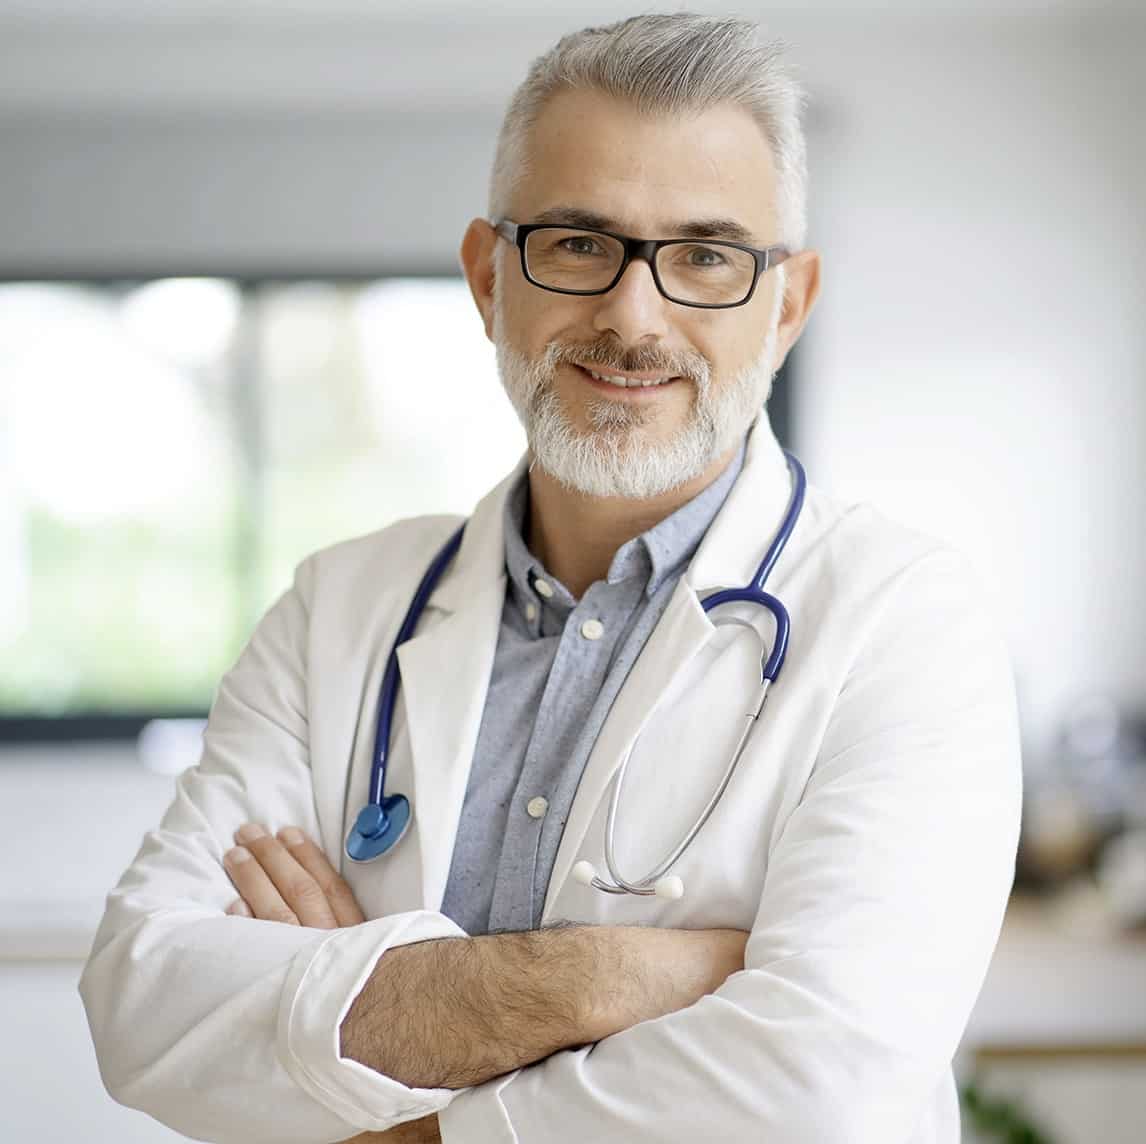 Zdjęcie lekarza w białum kitlu i ze stetoskopem.